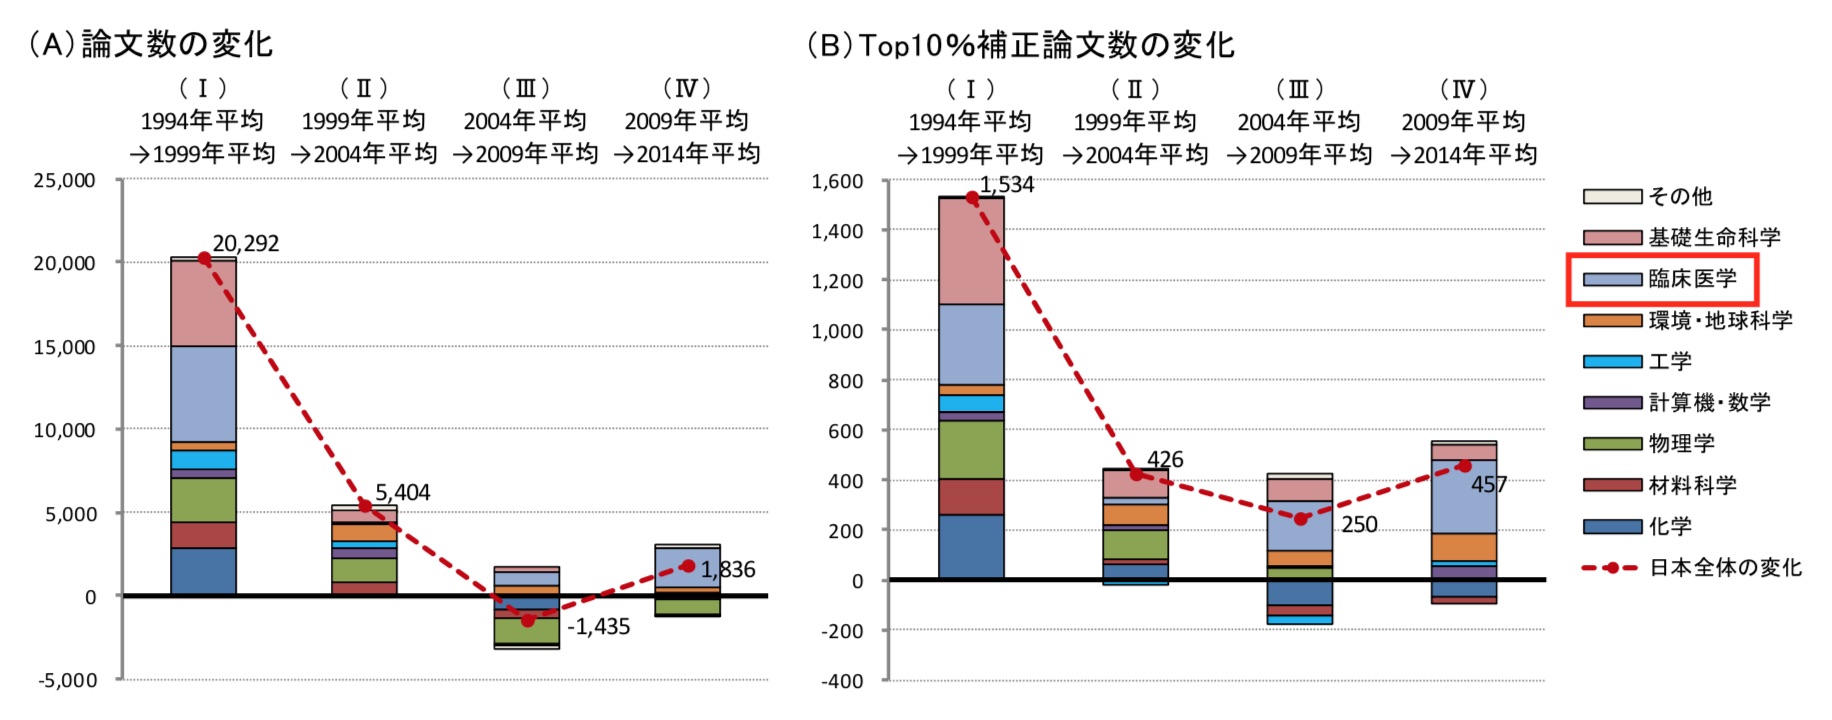 図1. 日本の論文数（A）およびTop10％補正論文数（B）の変化